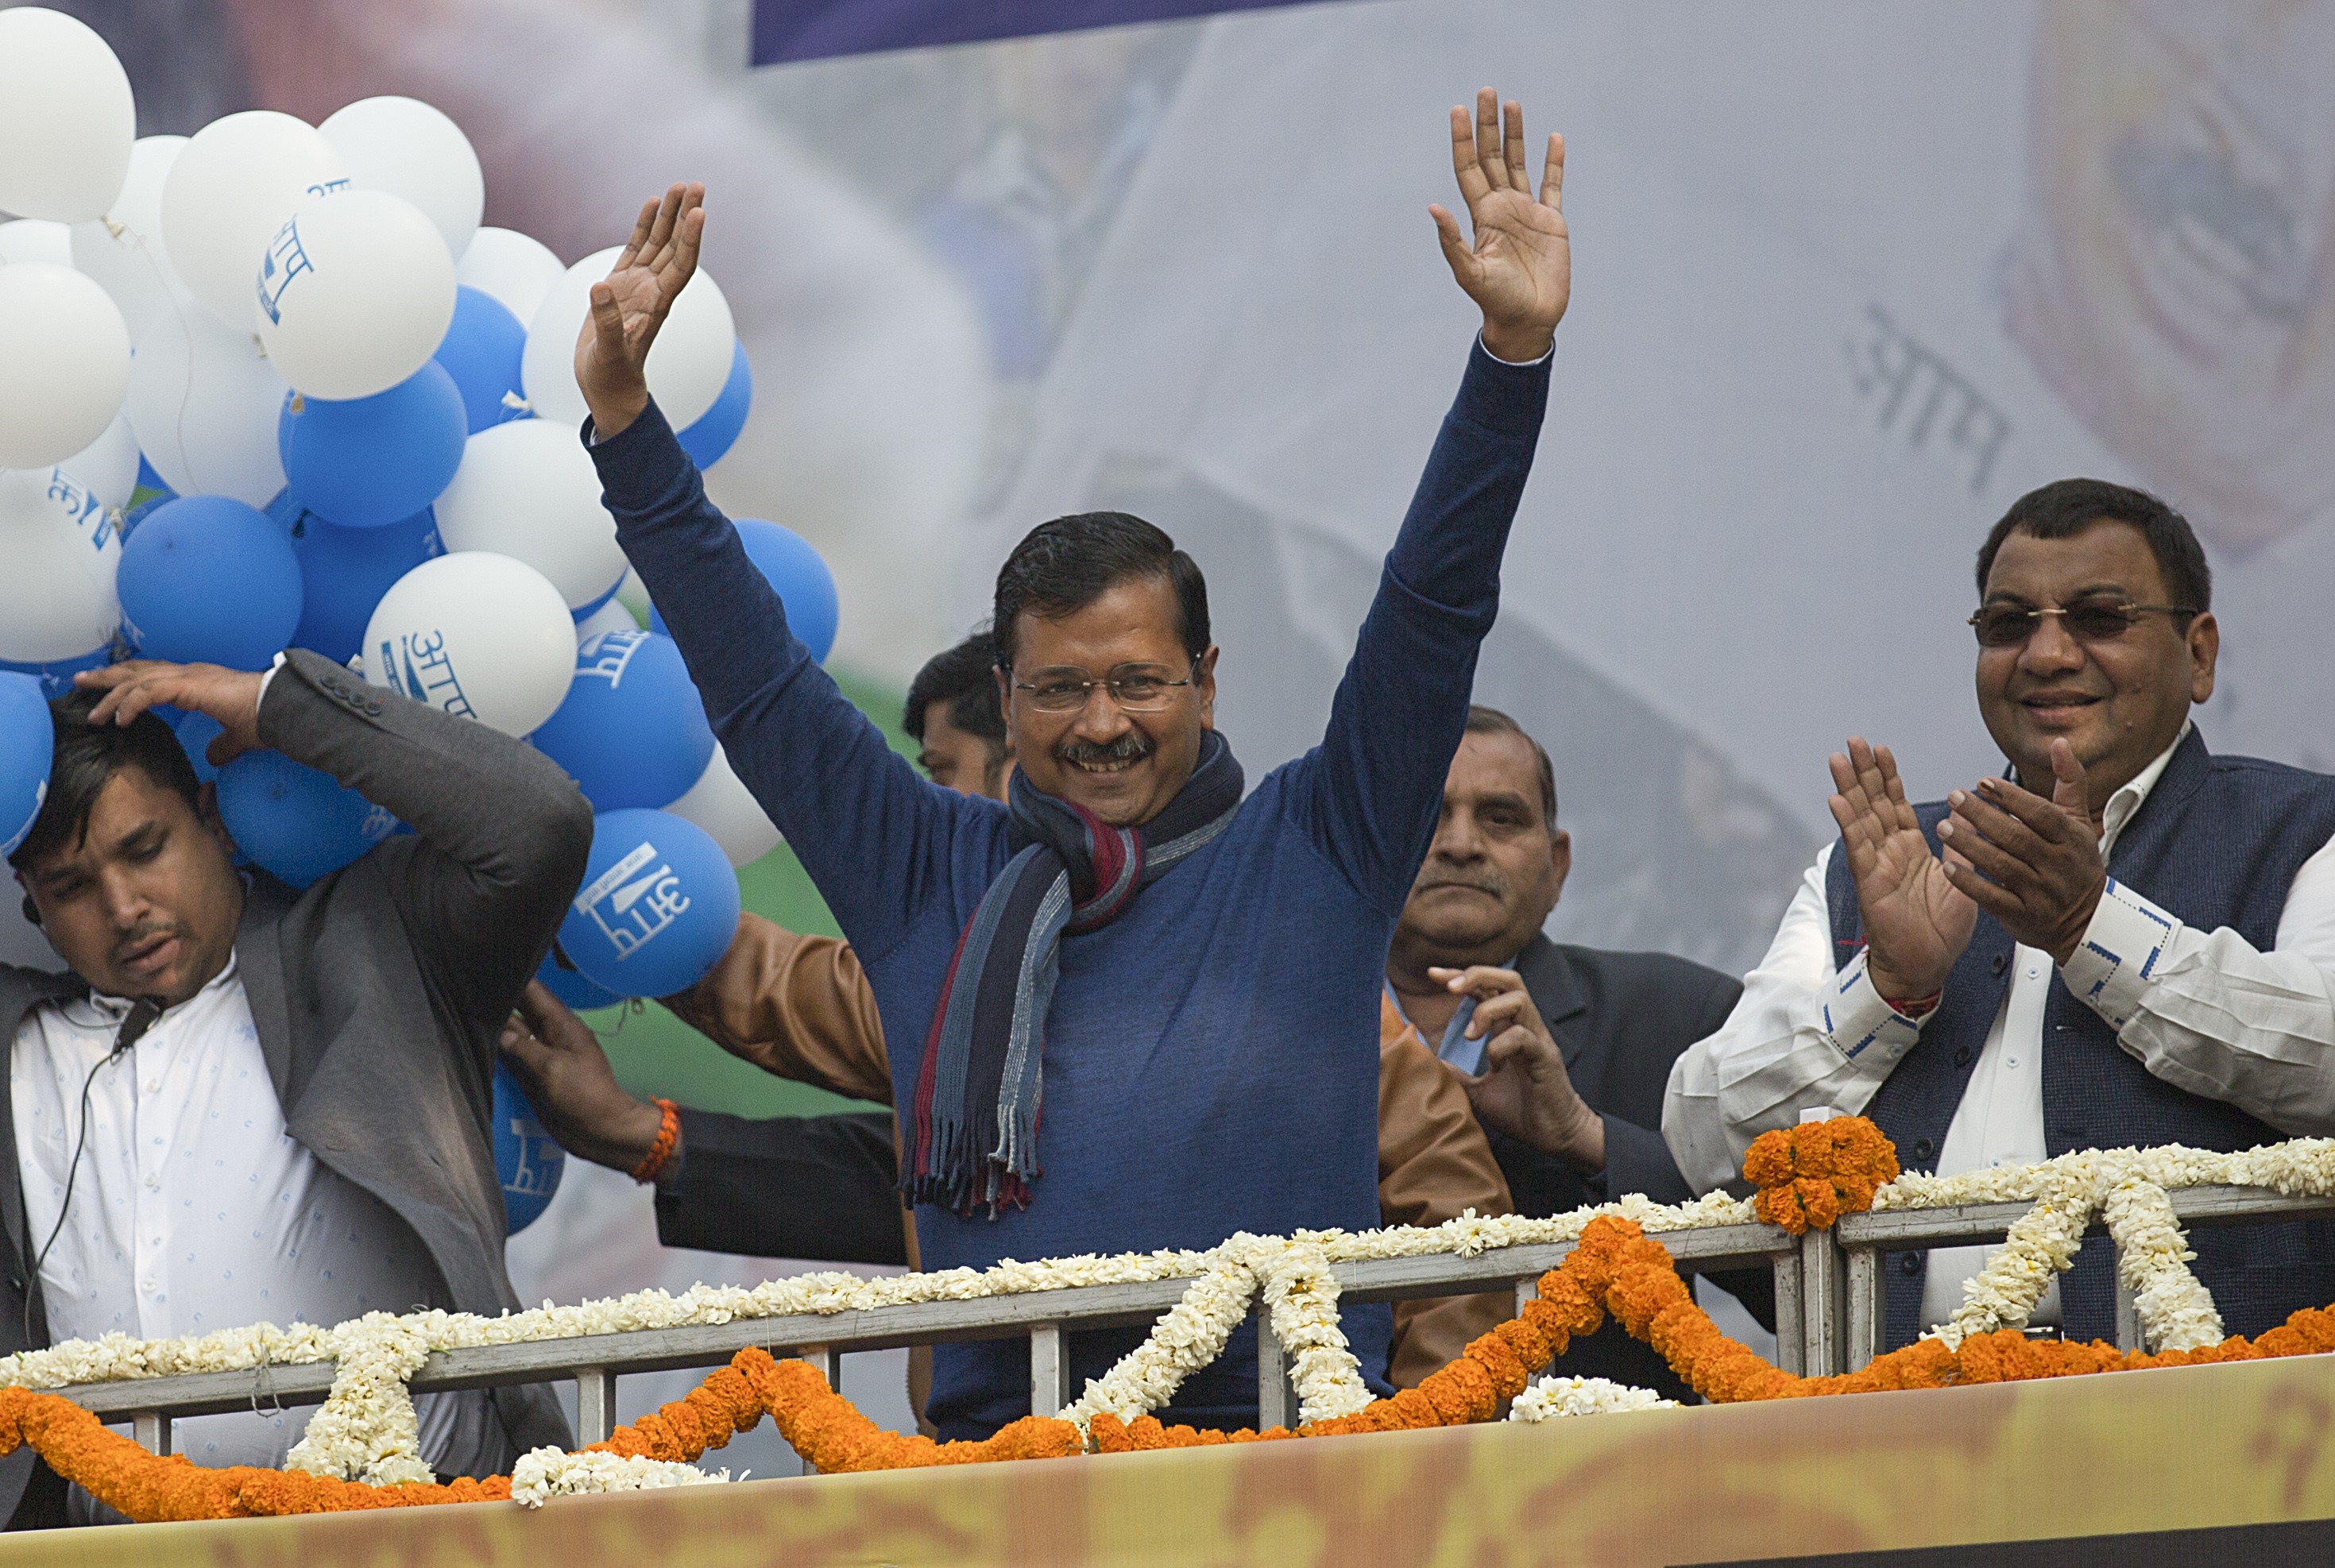 Lãnh đạo đảng Aam Aadmi (AAP) cầm quyền tại Delhi, ông Arvind Kejriwal (giữa) vẫy chào những người ủng hộ tại New Delhi, sau khi kết quả cuộc bầu cử ở địa phương được công bố, ngày 11/2/2020. (Ảnh: THX/TTXVN)